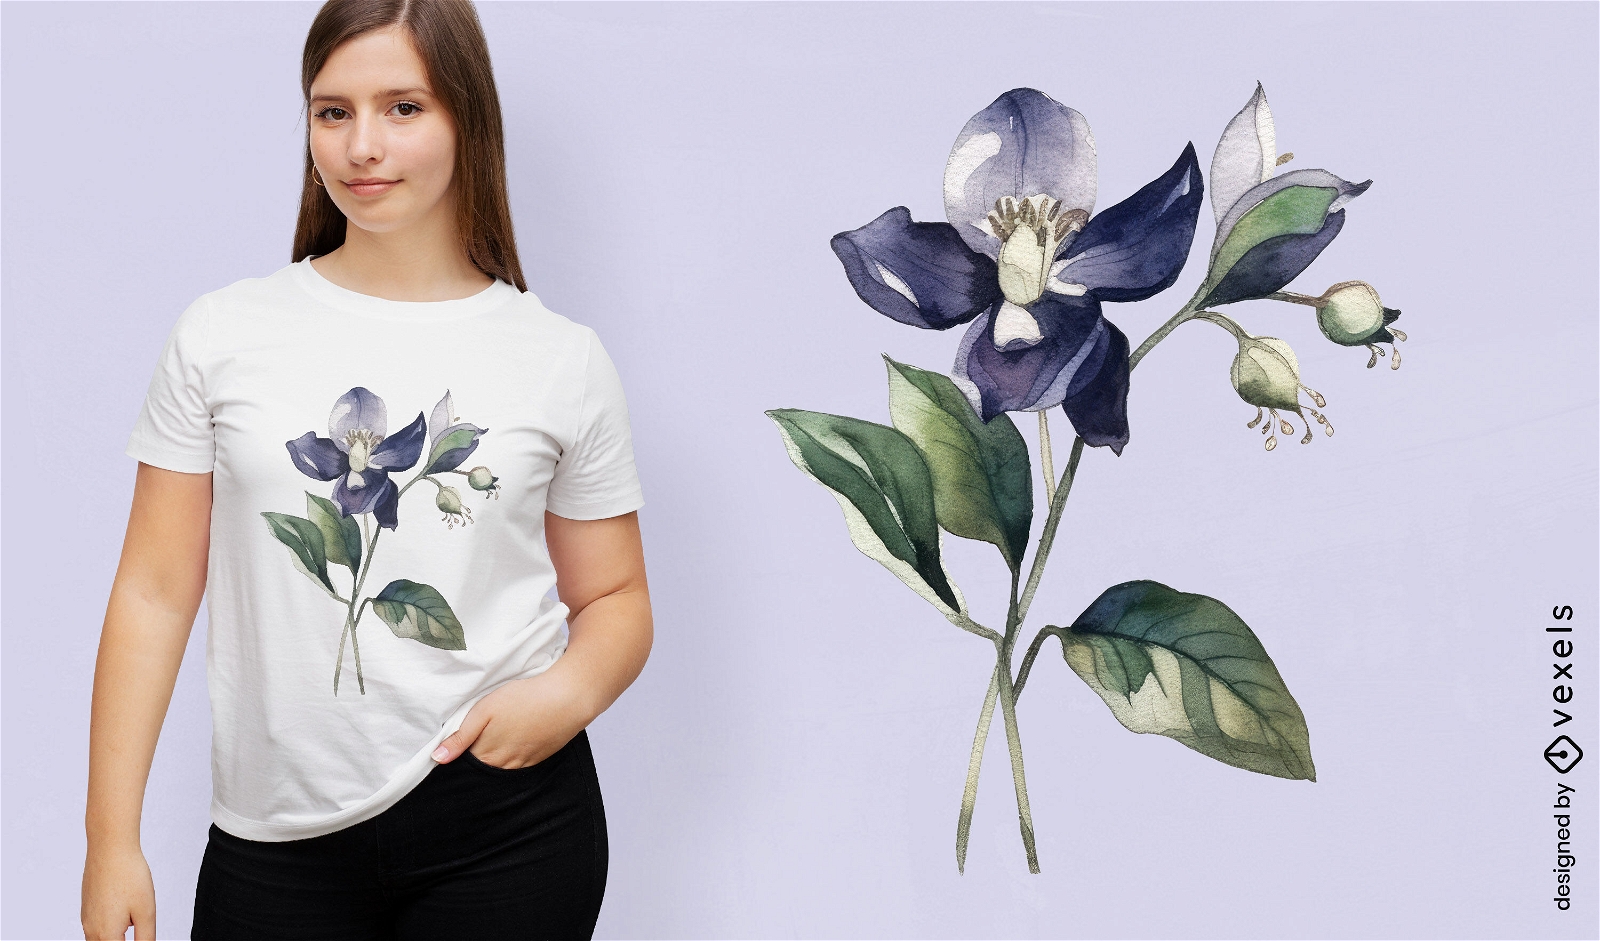 Nightshade flower t-shirt design